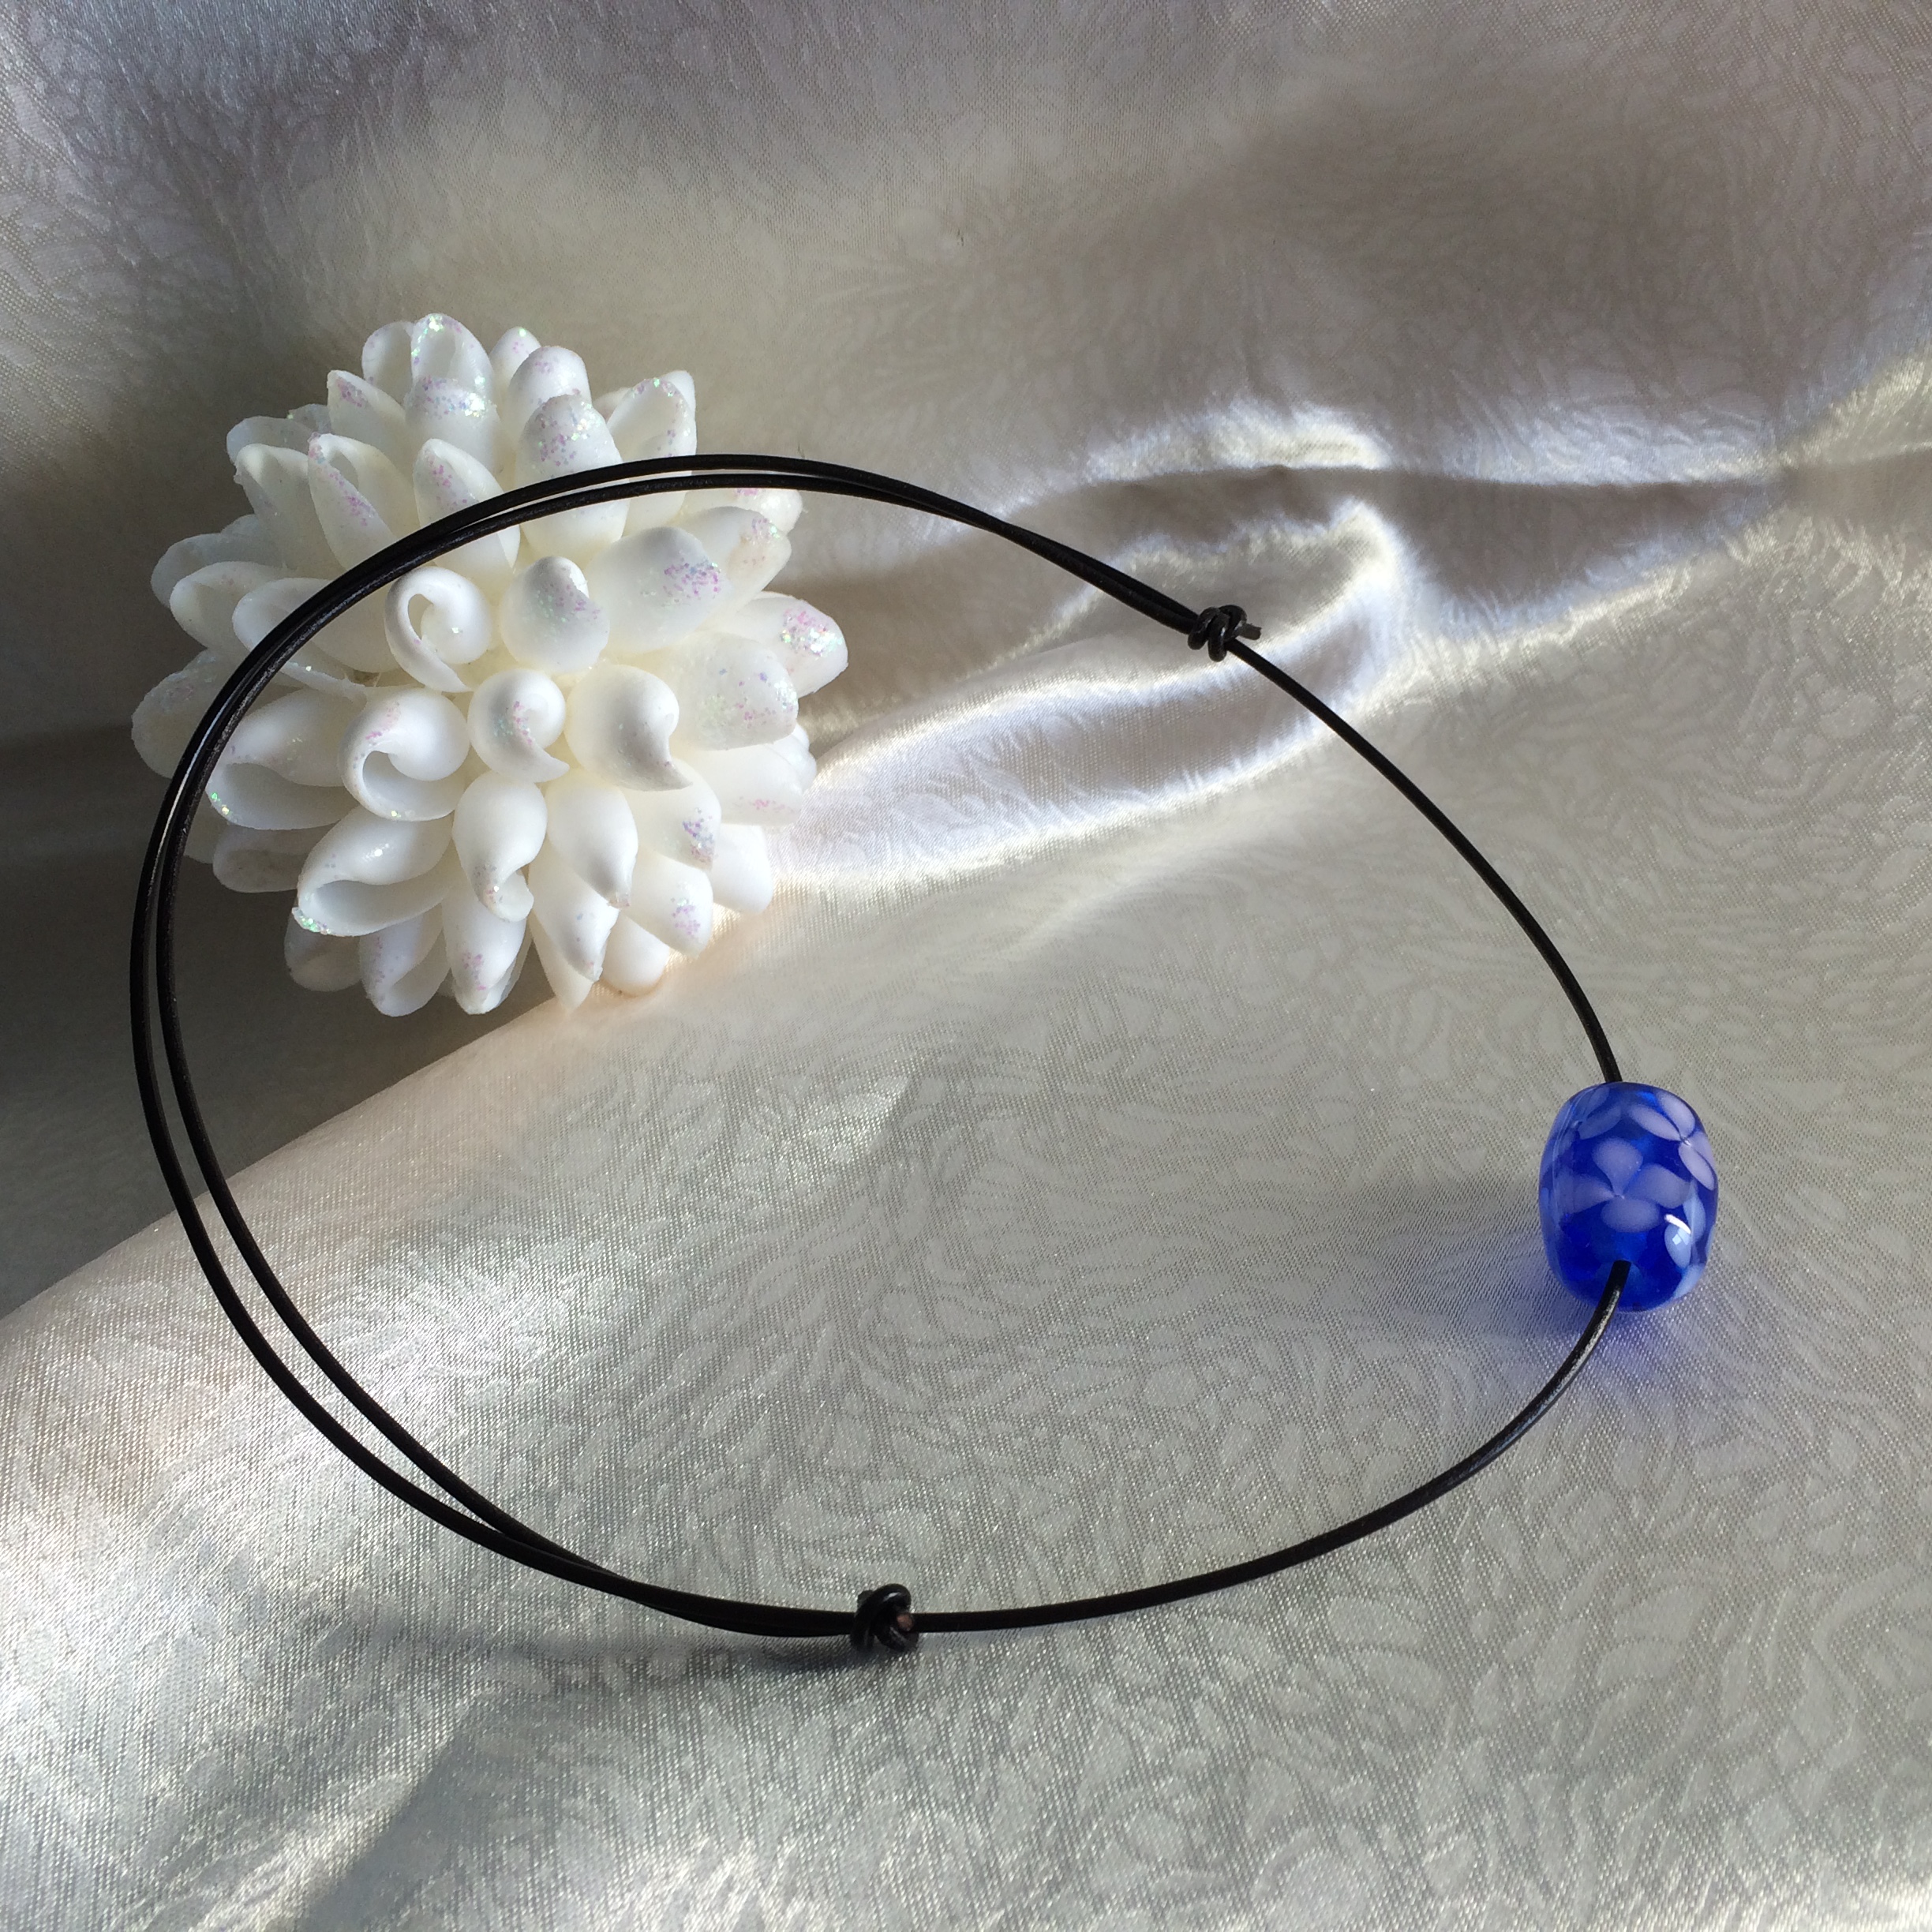 革ひもとトンボ玉のシンプルネックレスを作りました 貝殻と革の小物雑貨ショップ Rikoyu りこゆ